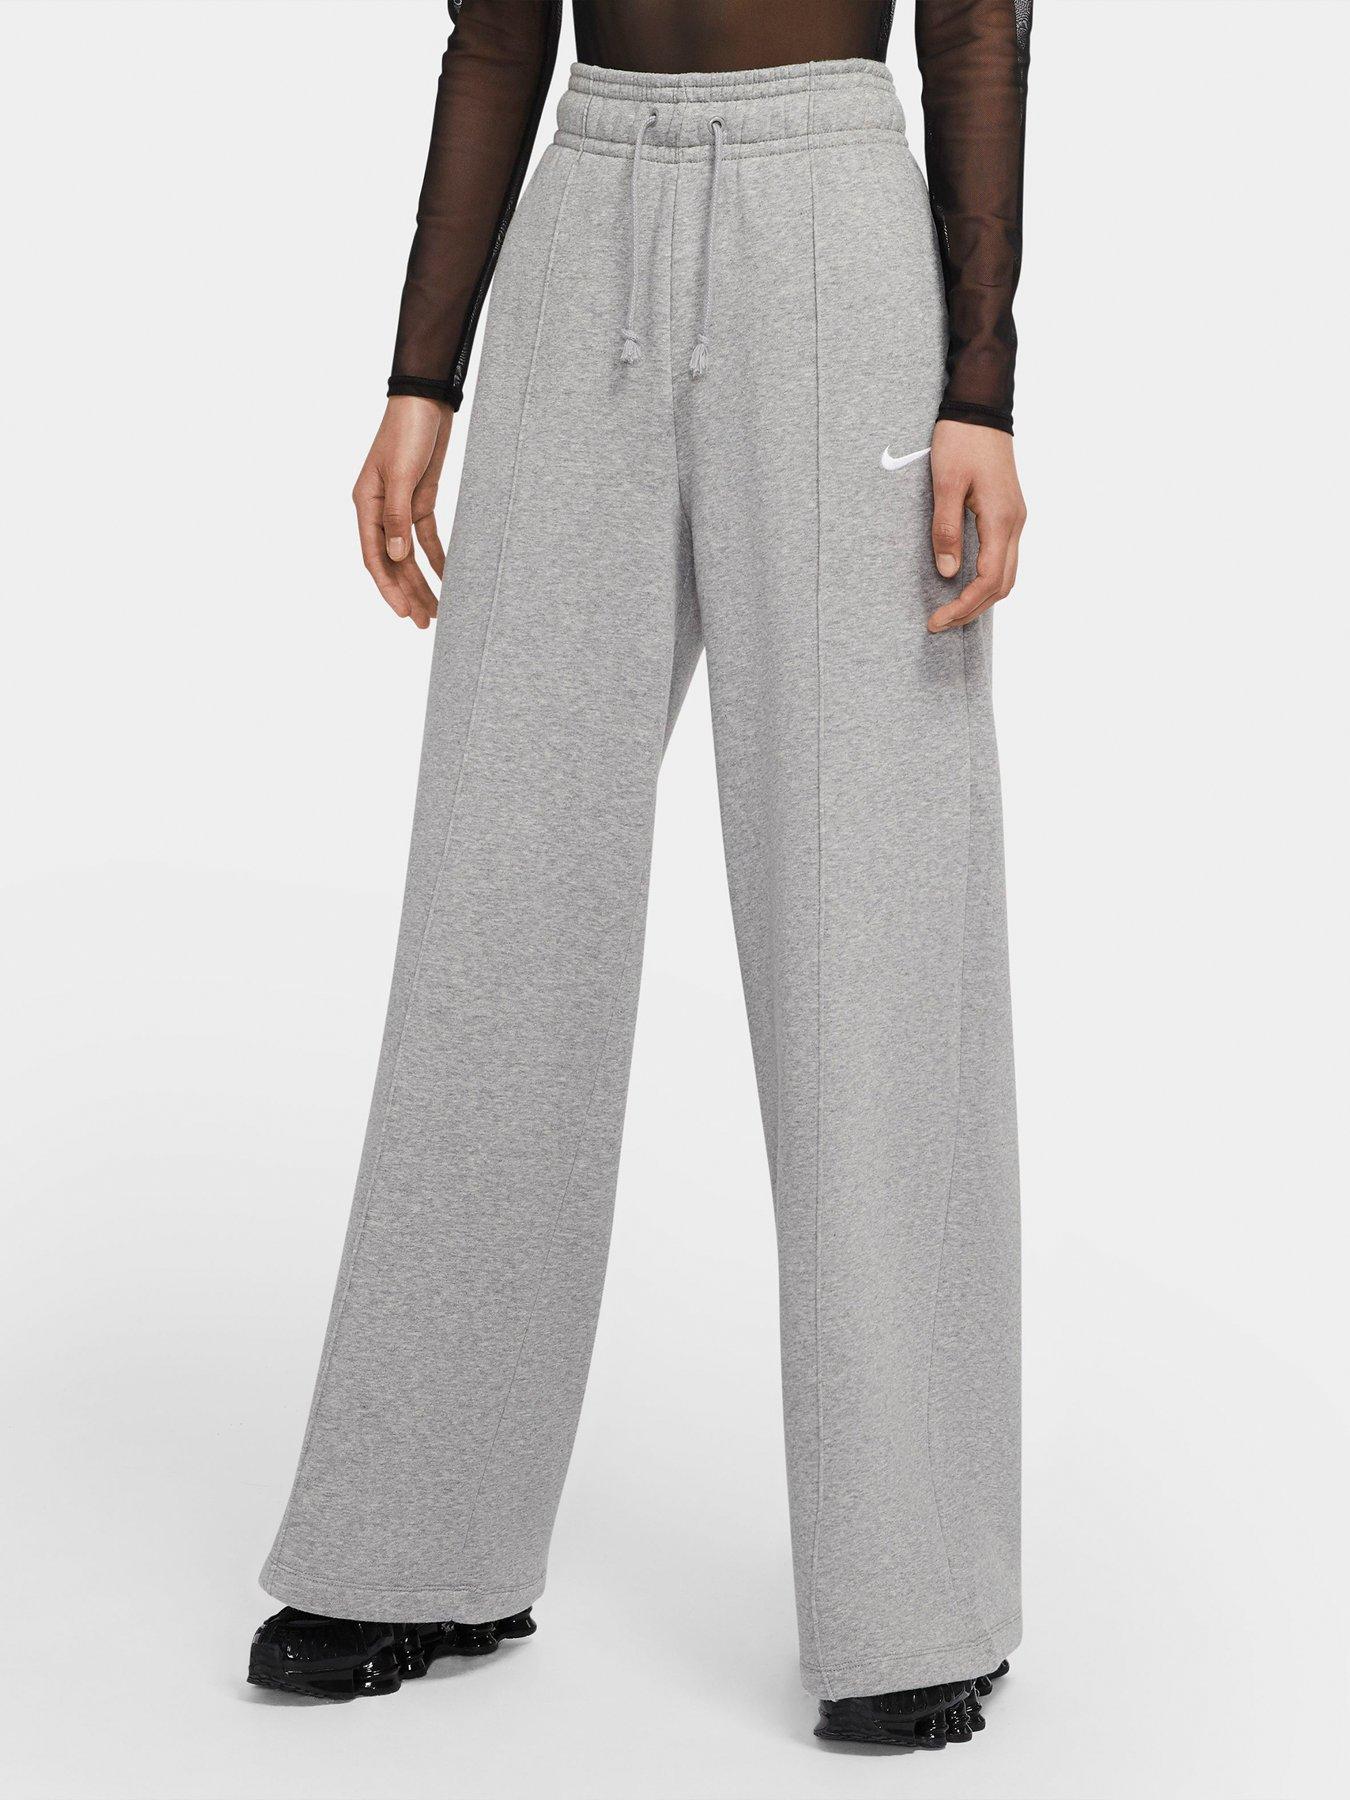 Nike NSW Fleece Pants - Dark Grey 